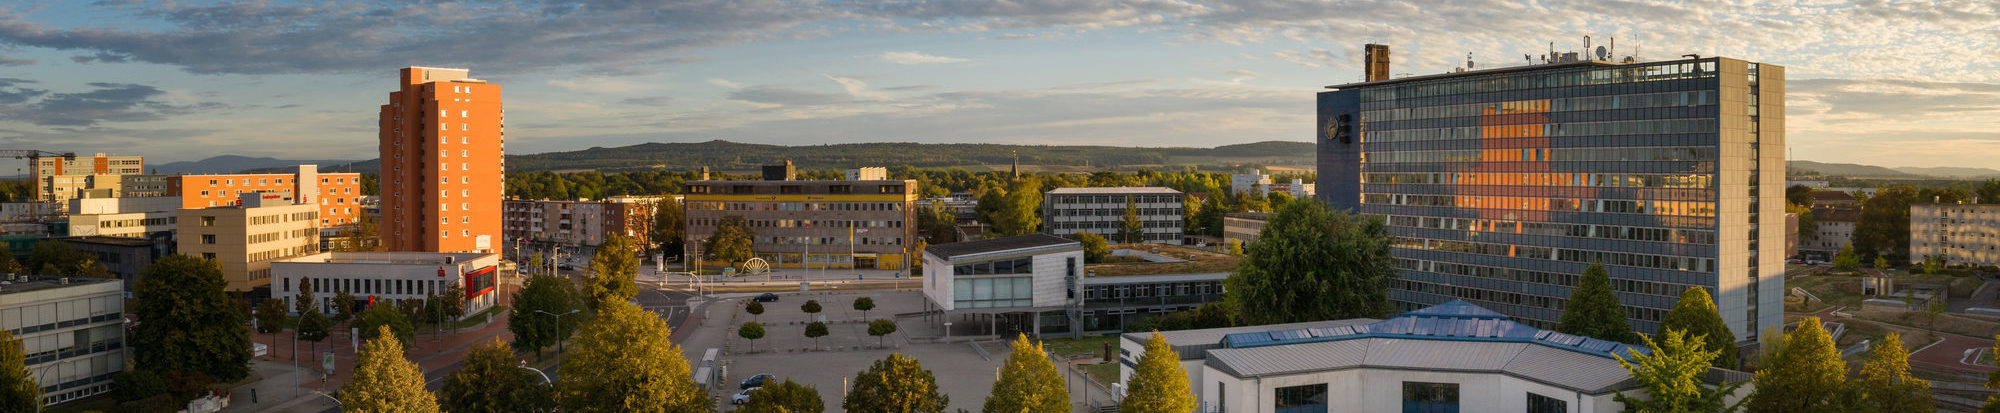 Luftbild von Salzgitter-Lebenstedt mit Rathaus